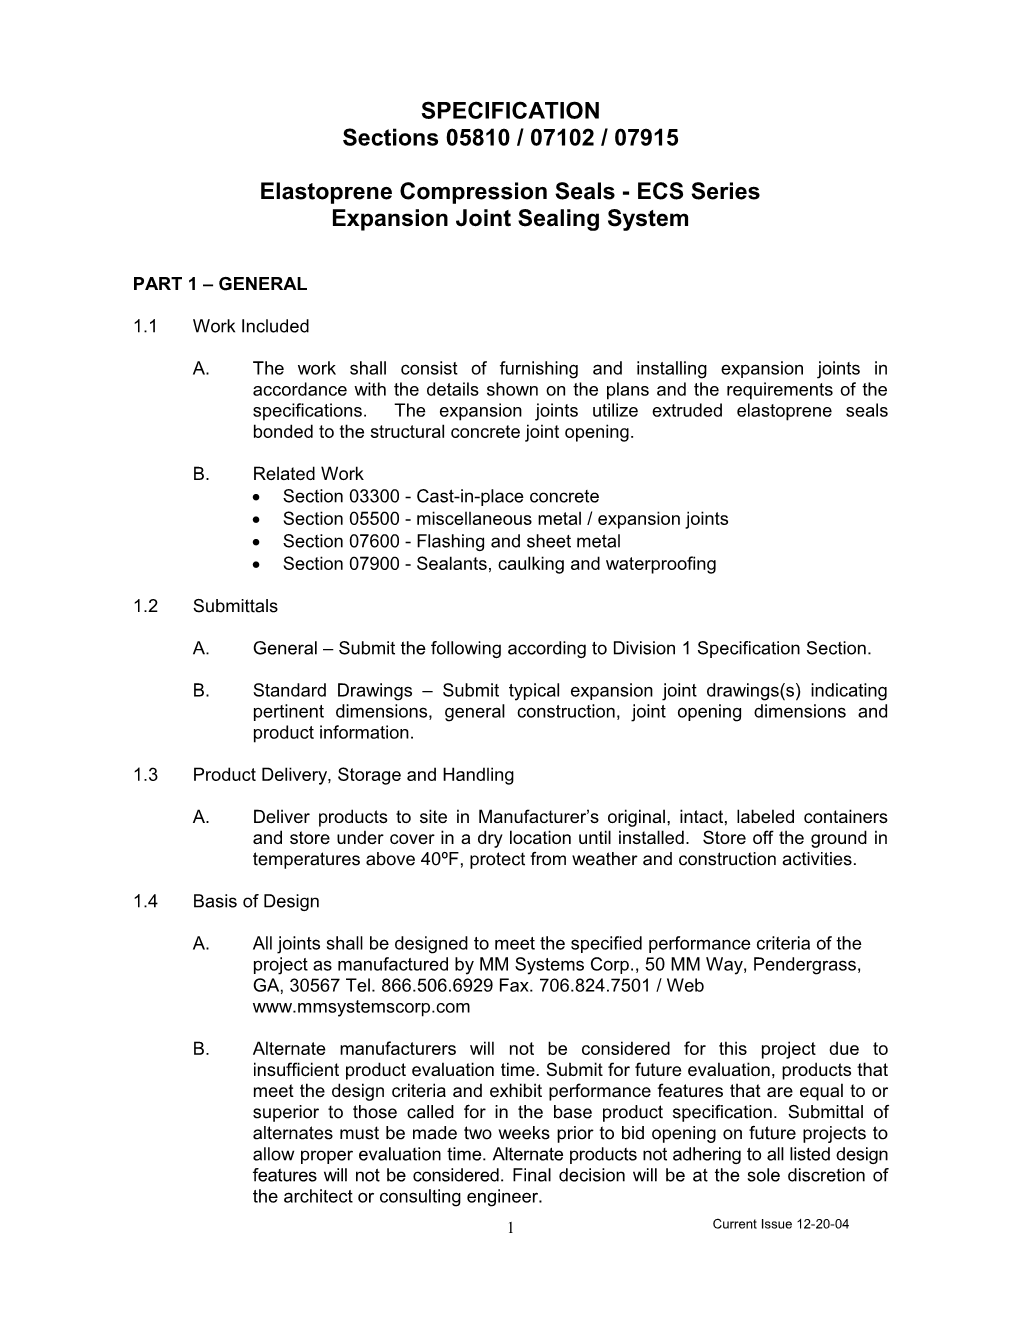 Elastoprene Compression Seals - ECS Series